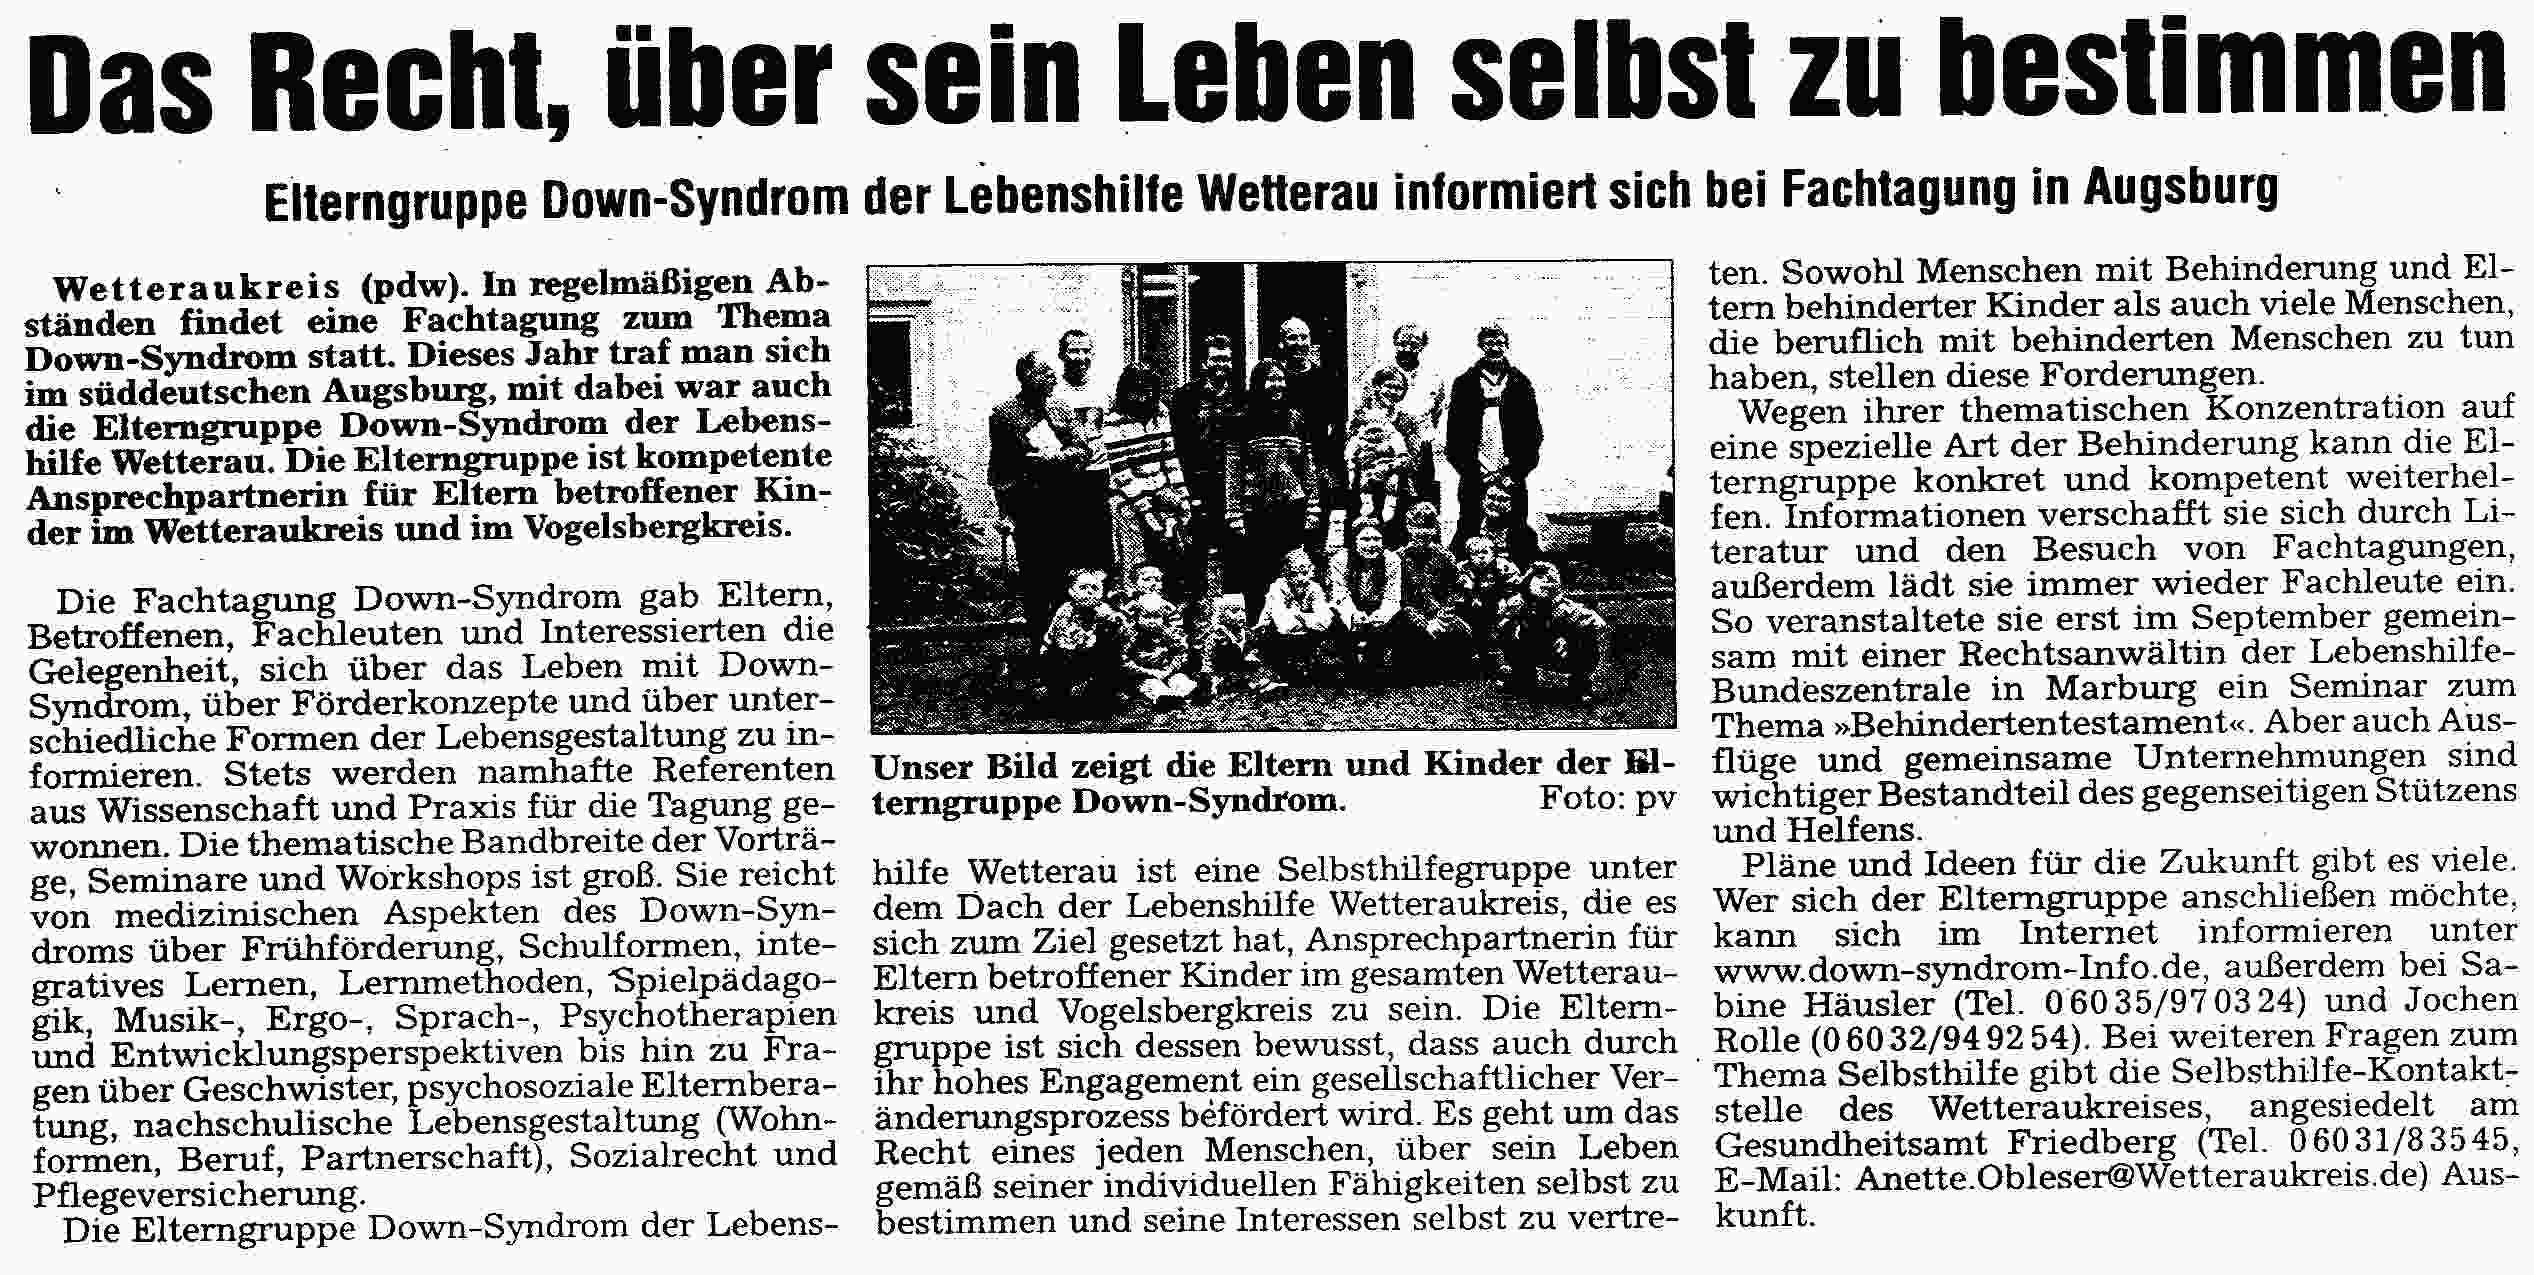 Originalartikel aus der Wetterauer Zeitung vom 27.10.2005